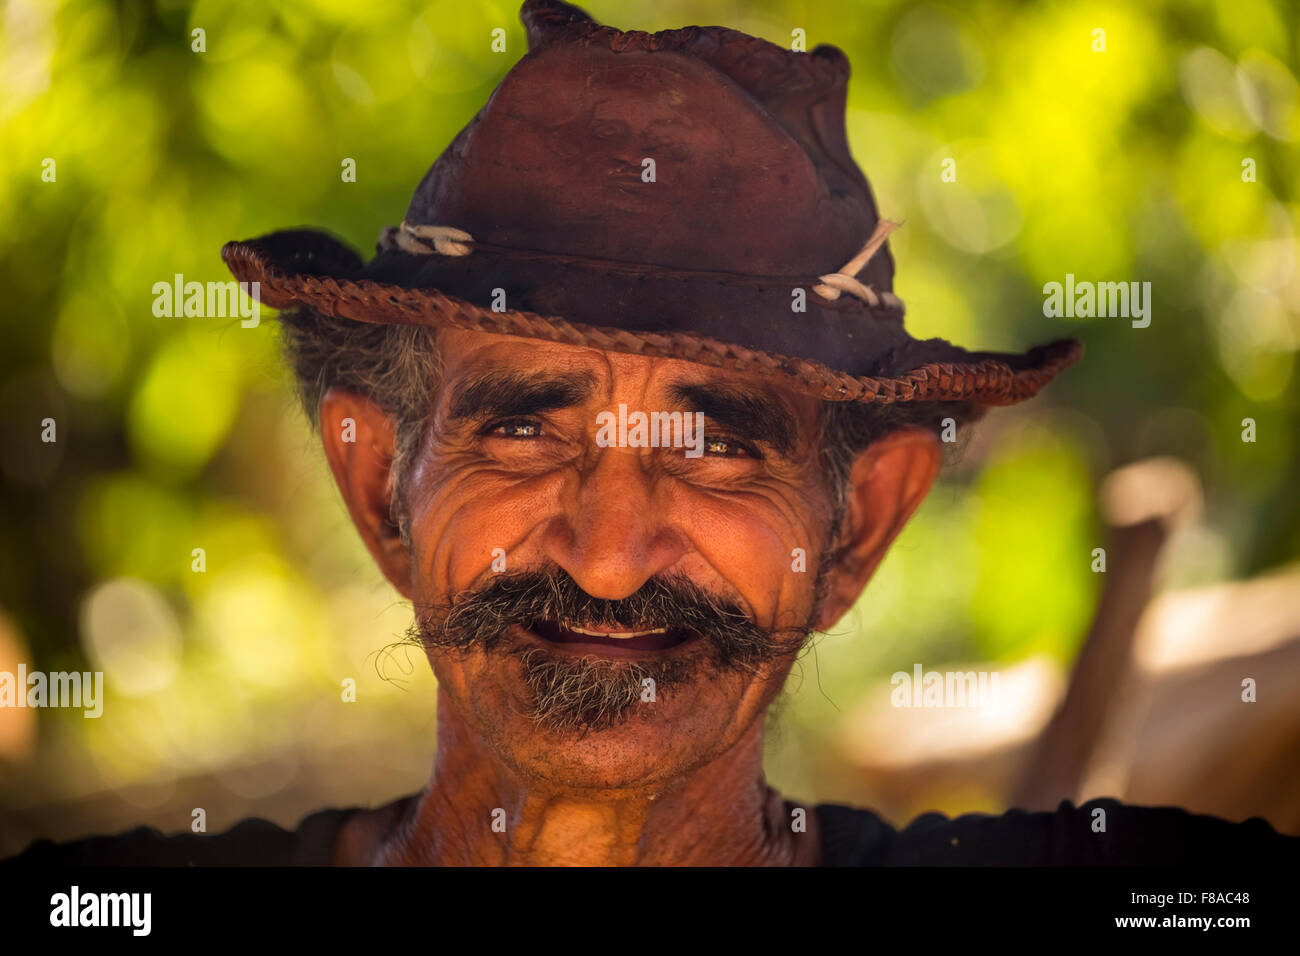 Coltivatori di canna da zucchero nella Valle de los Ingenios, ritratto con Hat, Trinidad, Sancti Spíritus, Cuba, Cuba Sancti Spíritus, Foto Stock